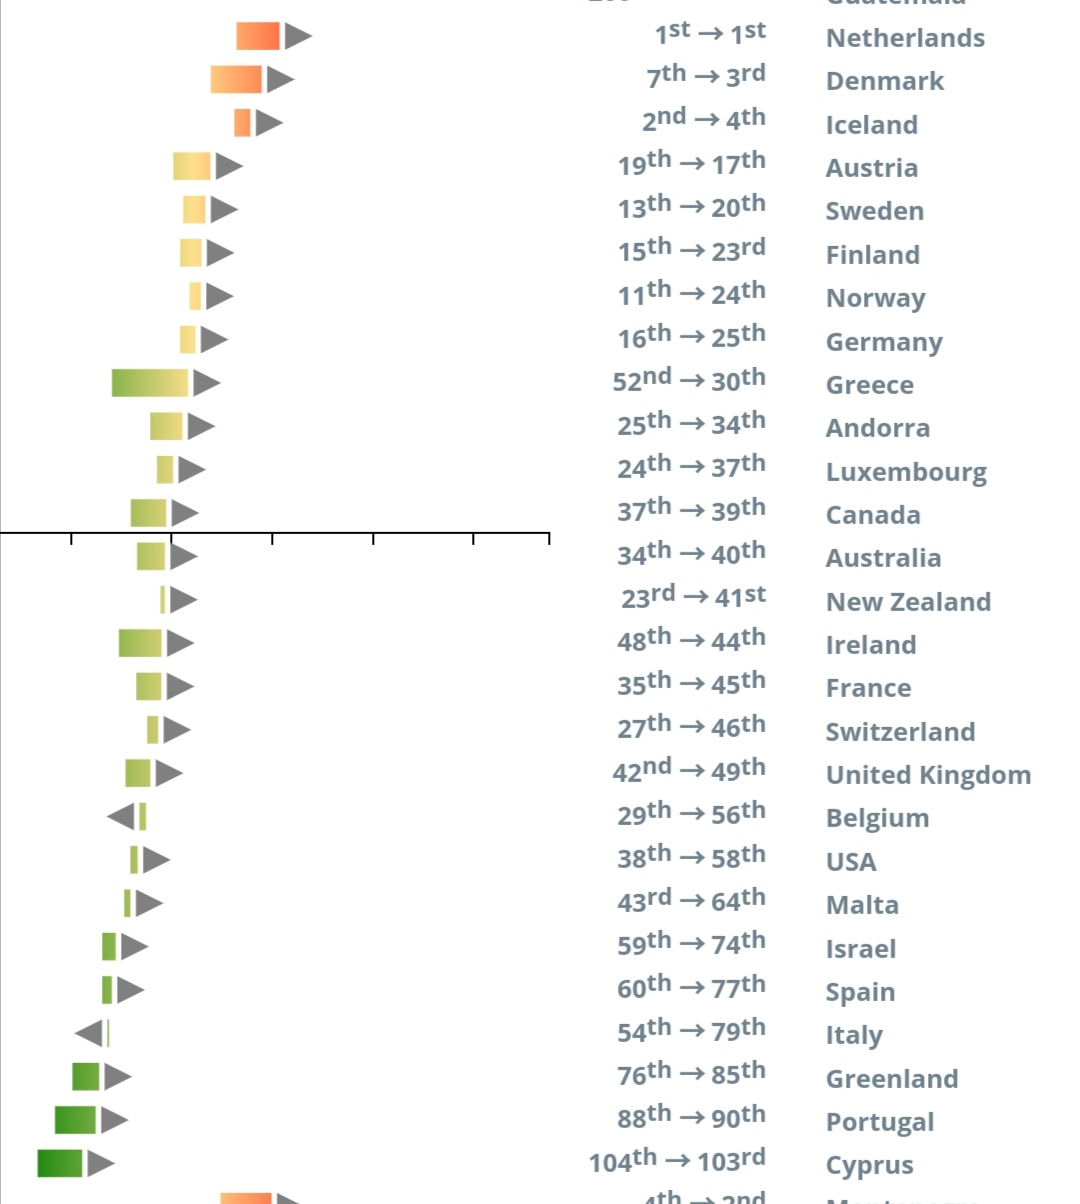 全世界で最も平均身長が高いオランダ Euで最も肉を食べないことが判明する 肉食は身長に悪影響か